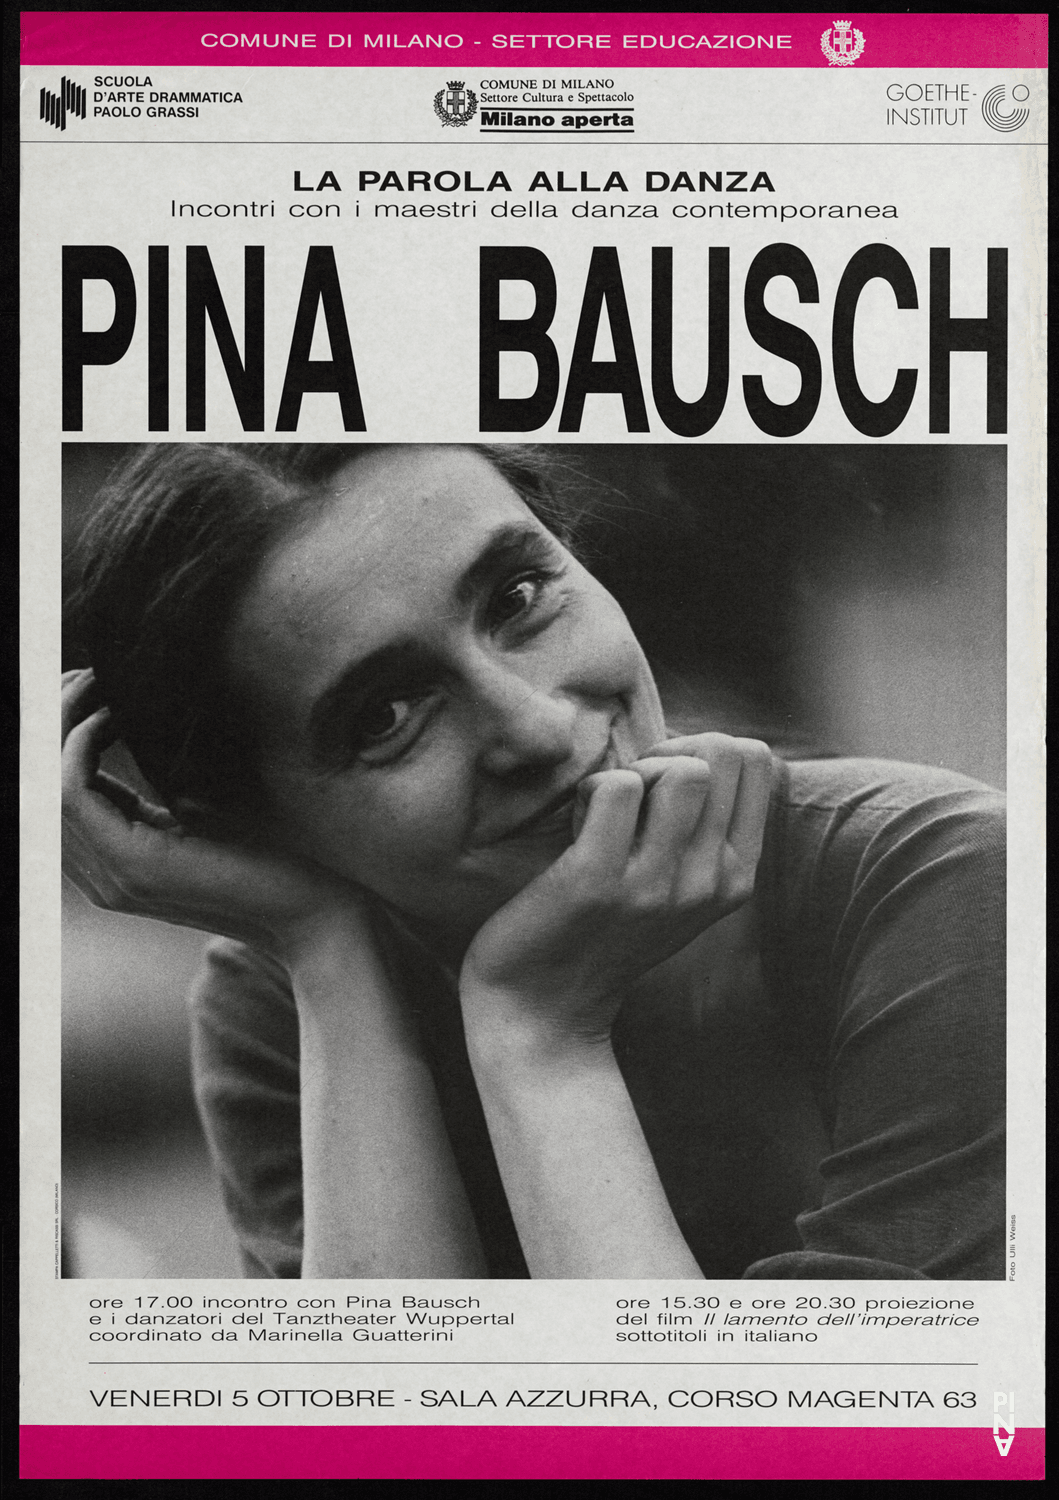 Poster: Ulli Weiss © Pina Bausch Foundation